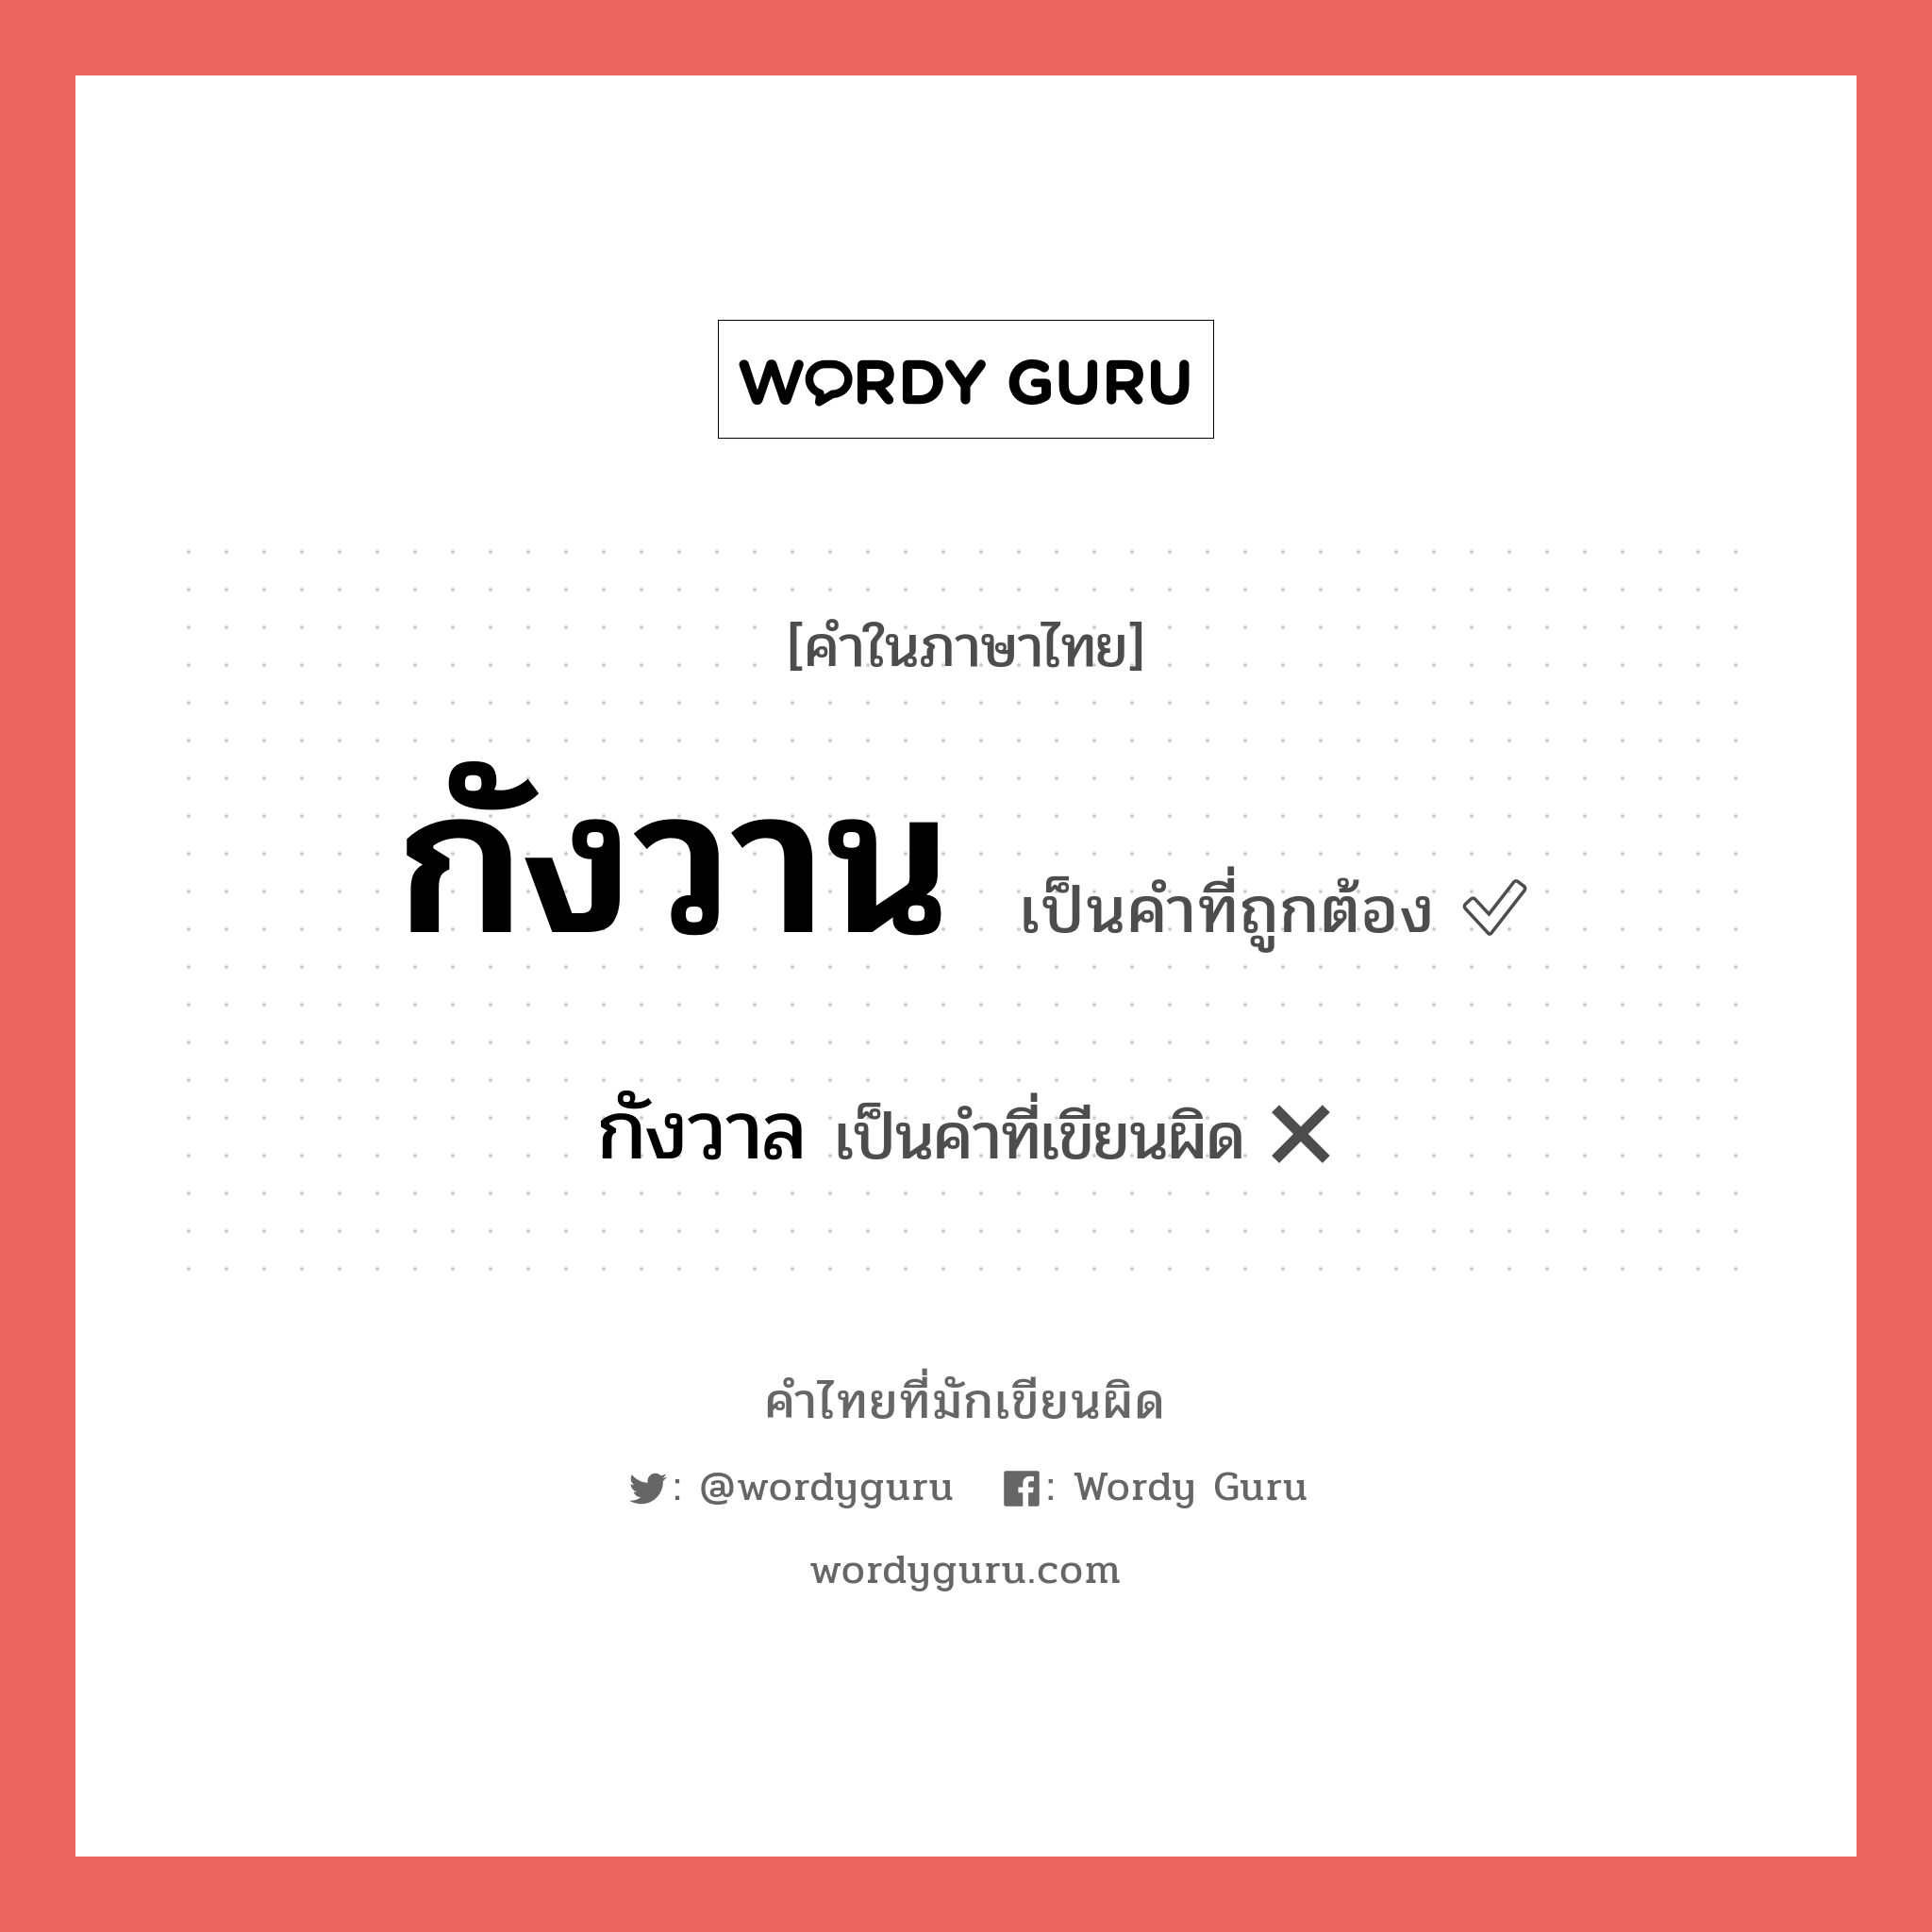 กังวาน หรือ กังวาล เขียนยังไง? คำไหนเขียนถูก?, คำในภาษาไทยที่มักเขียนผิด กังวาน คำที่ผิด ❌ กังวาล